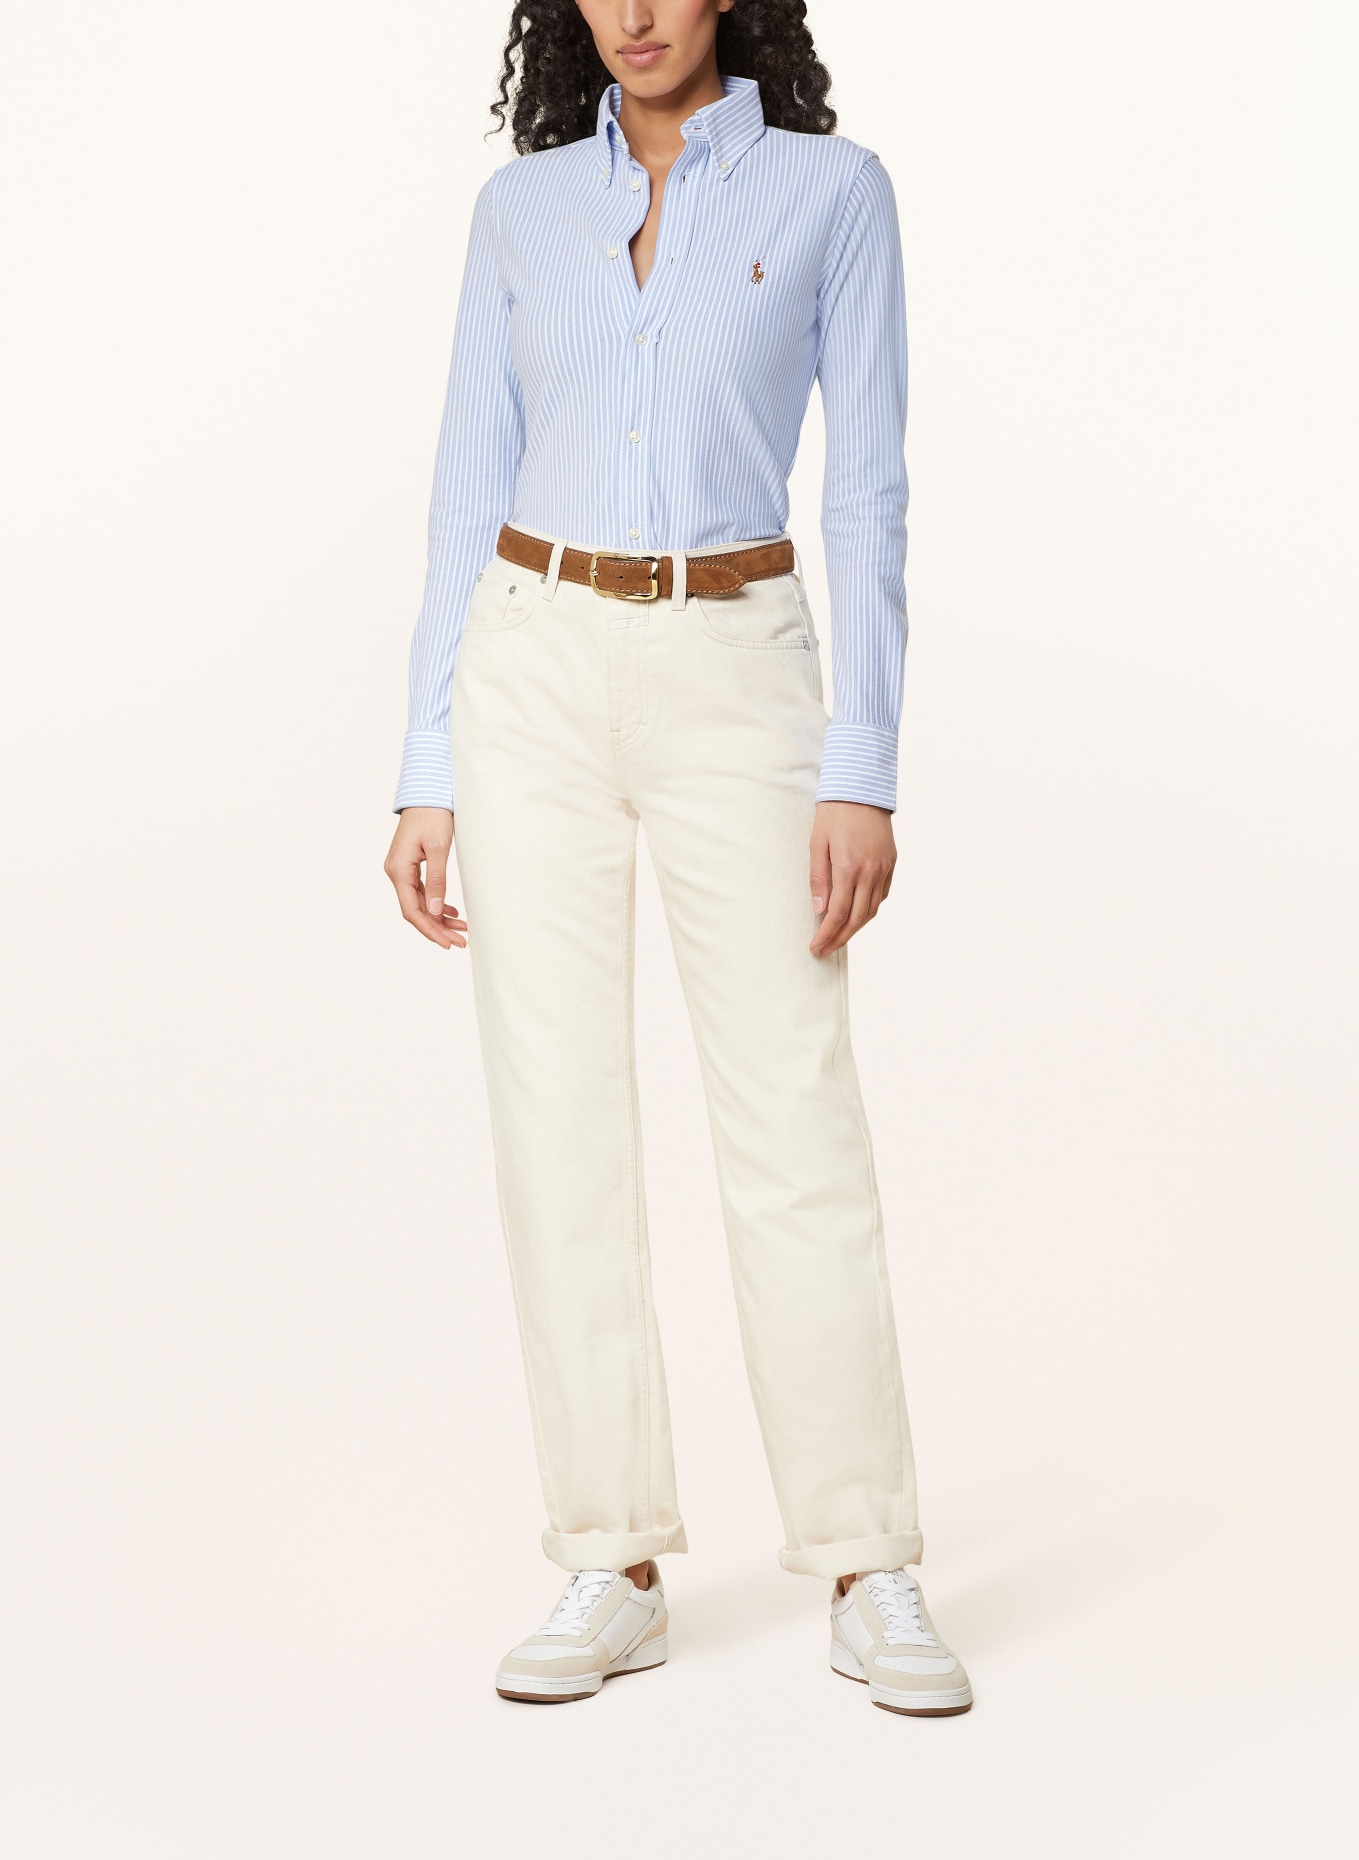 POLO RALPH LAUREN Shirt blouse, Color: WHITE/ LIGHT BLUE (Image 2)